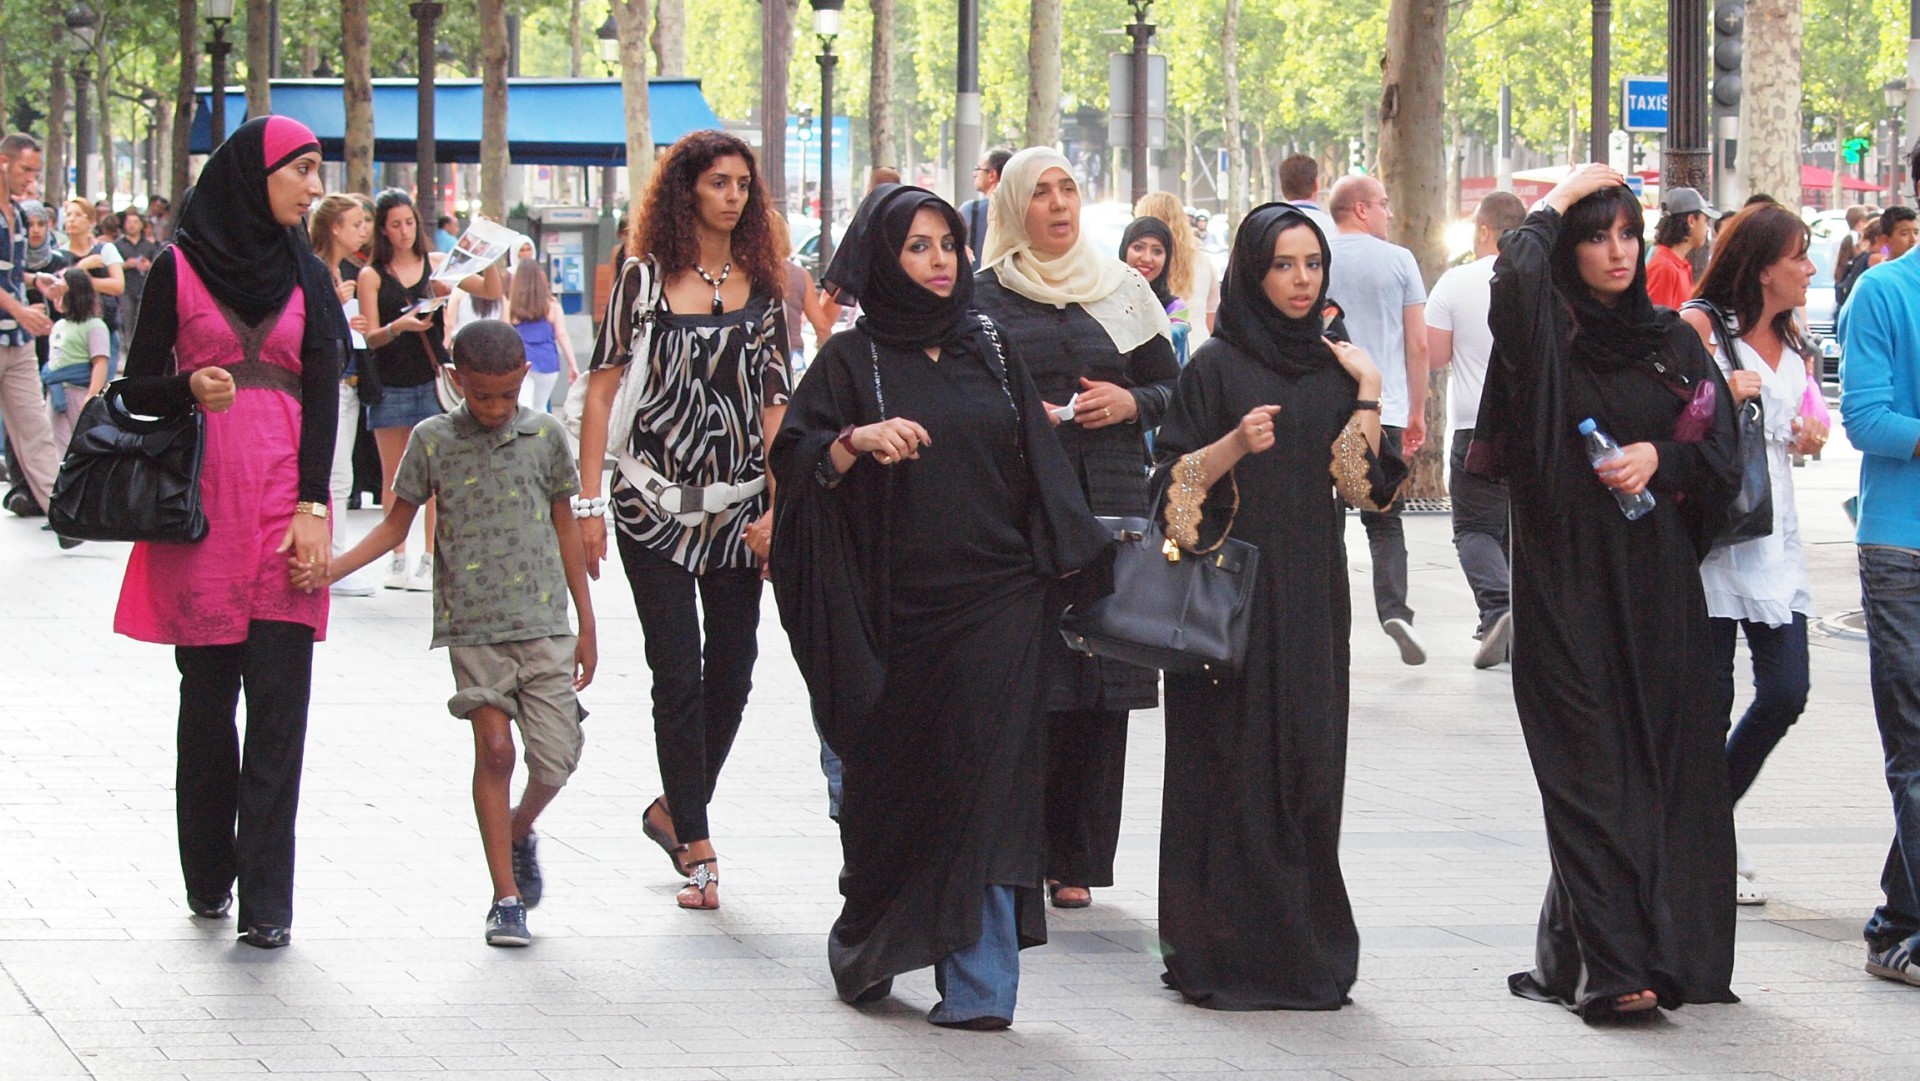 La multiculturalité engendre de nombreuses questions (Photo:zoetnet/Flickr/CC BY 2.0)